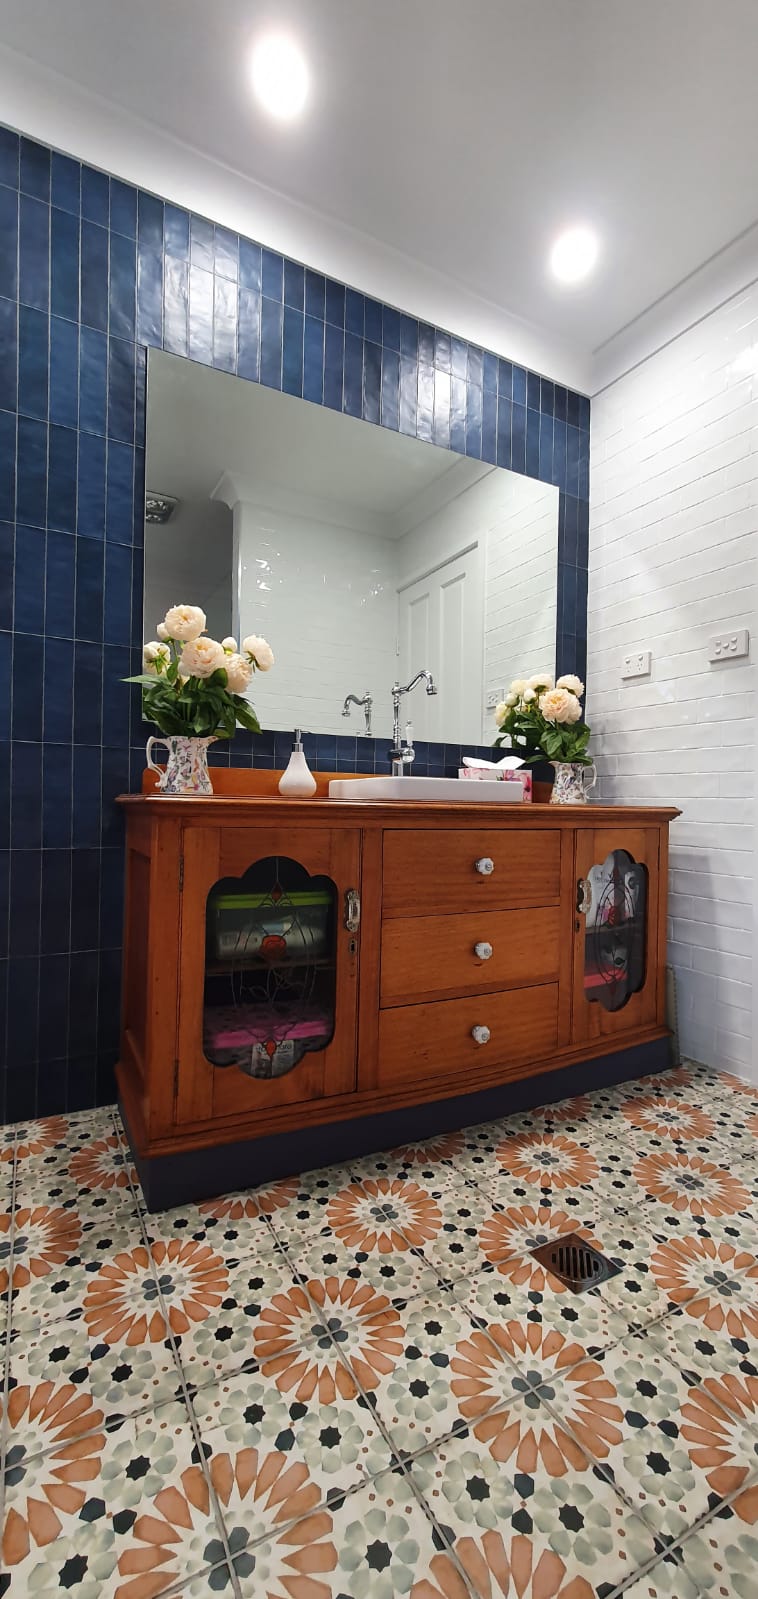 Foto de Summit Bathrooms - The bathroom renovation specialists